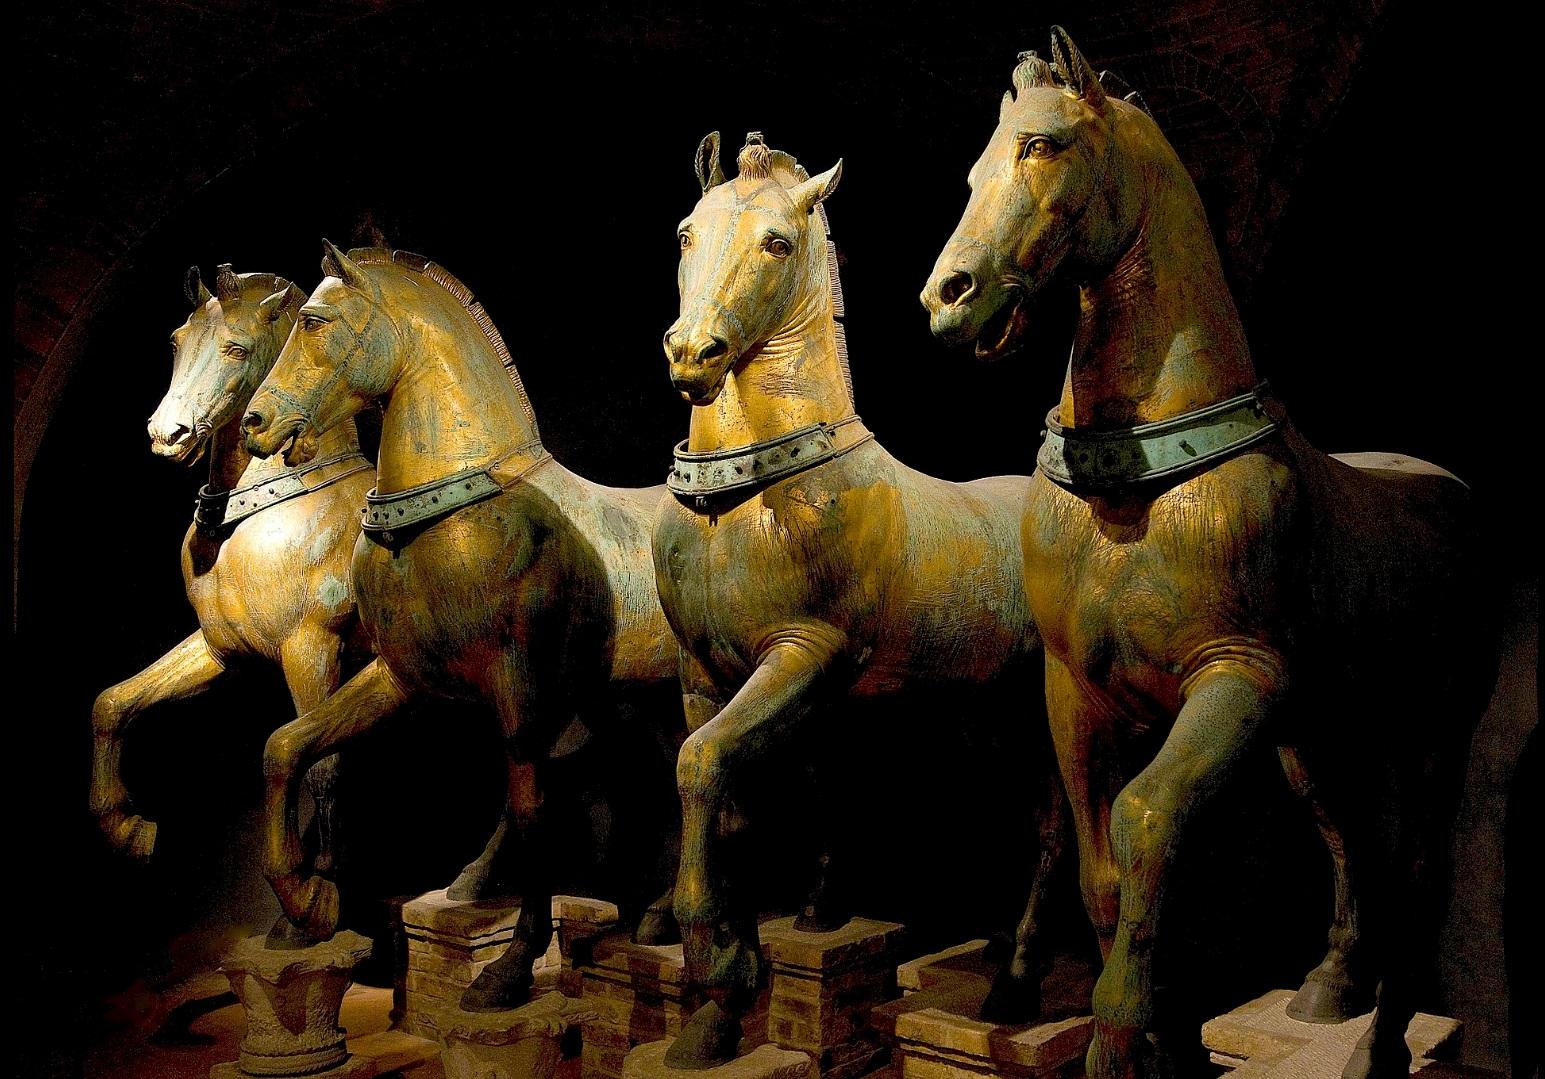 Royal House Antiques

The House of Antiques a le plaisir d'offrir à la vente ce superbe bronze du Grand Tour des chevaux de Saint-Marc, fabriqué à la main en Italie vers 1880. 

Il s'agit d'un exemplaire original et non d'une reproduction